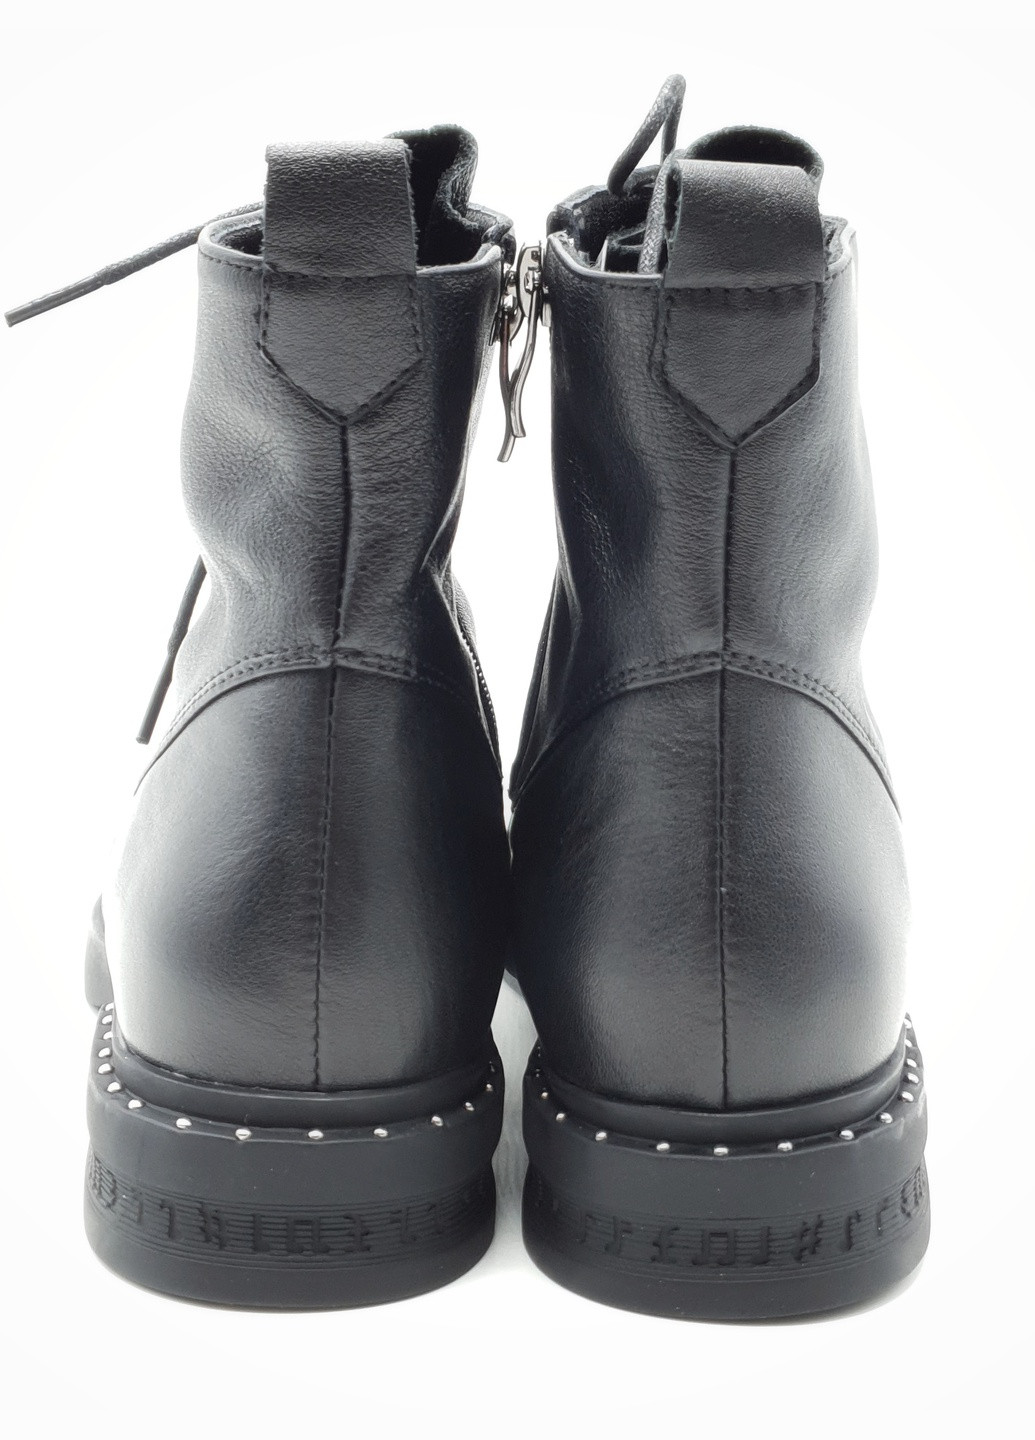 Осенние женские ботинки черные кожаные fm-19-1 23,5 см (р) Fabio Monelli